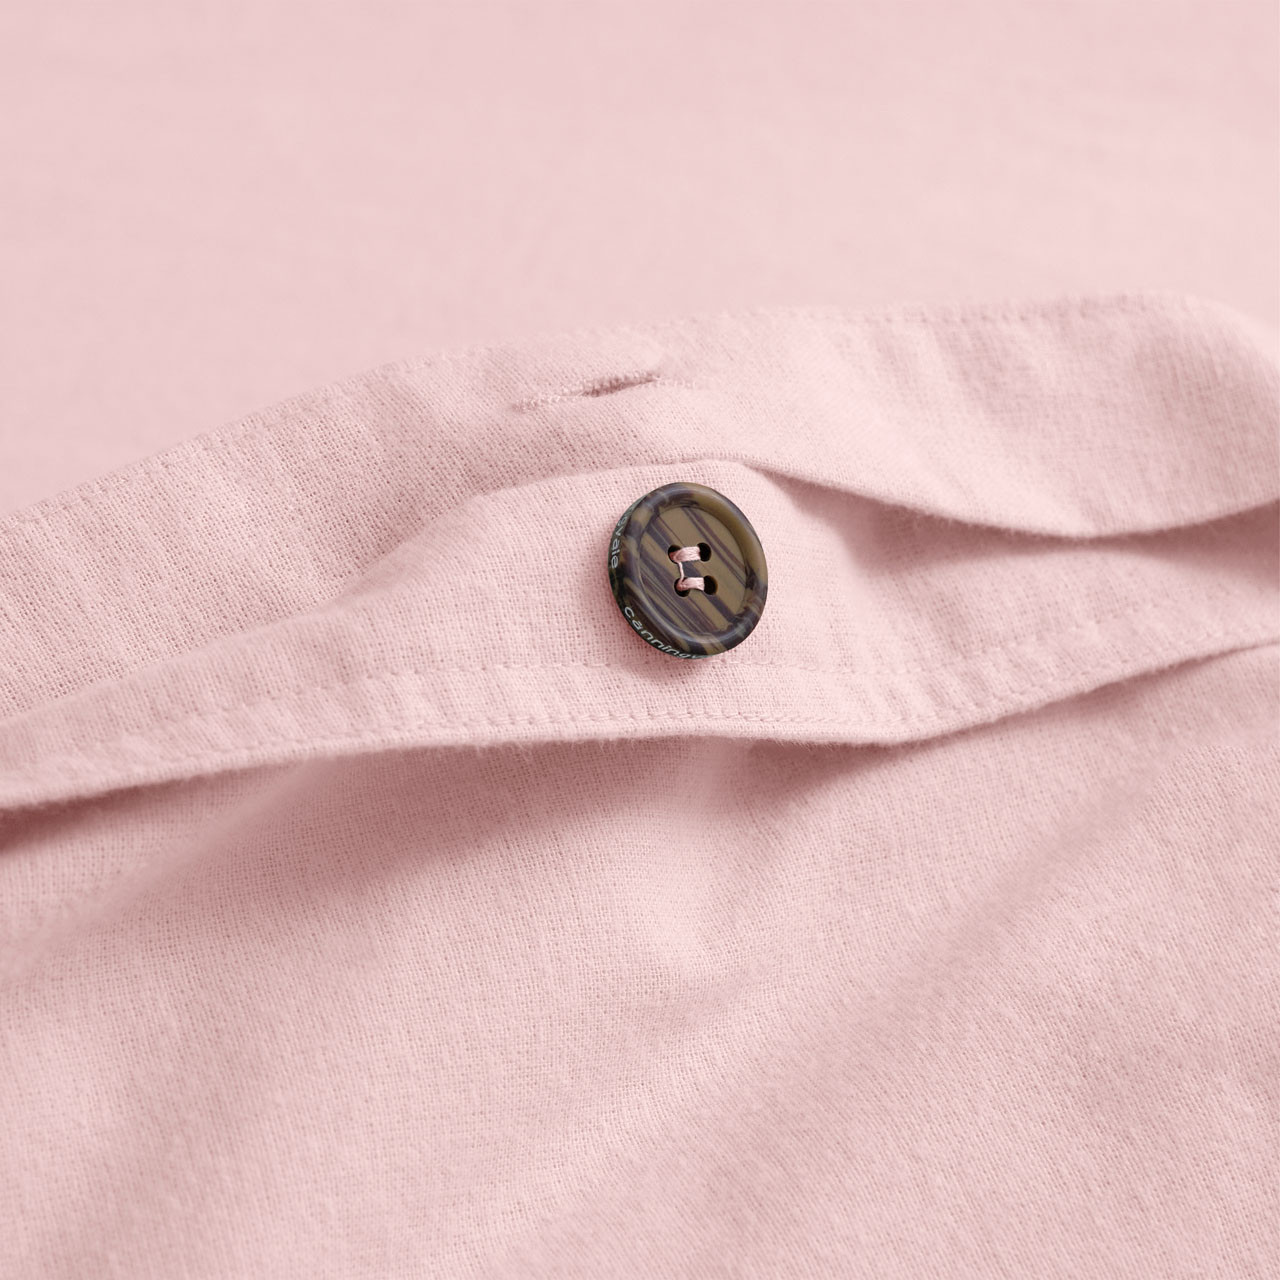 Cotton Flannelette Blush Pink Quilt Cover Set - CoziCotton